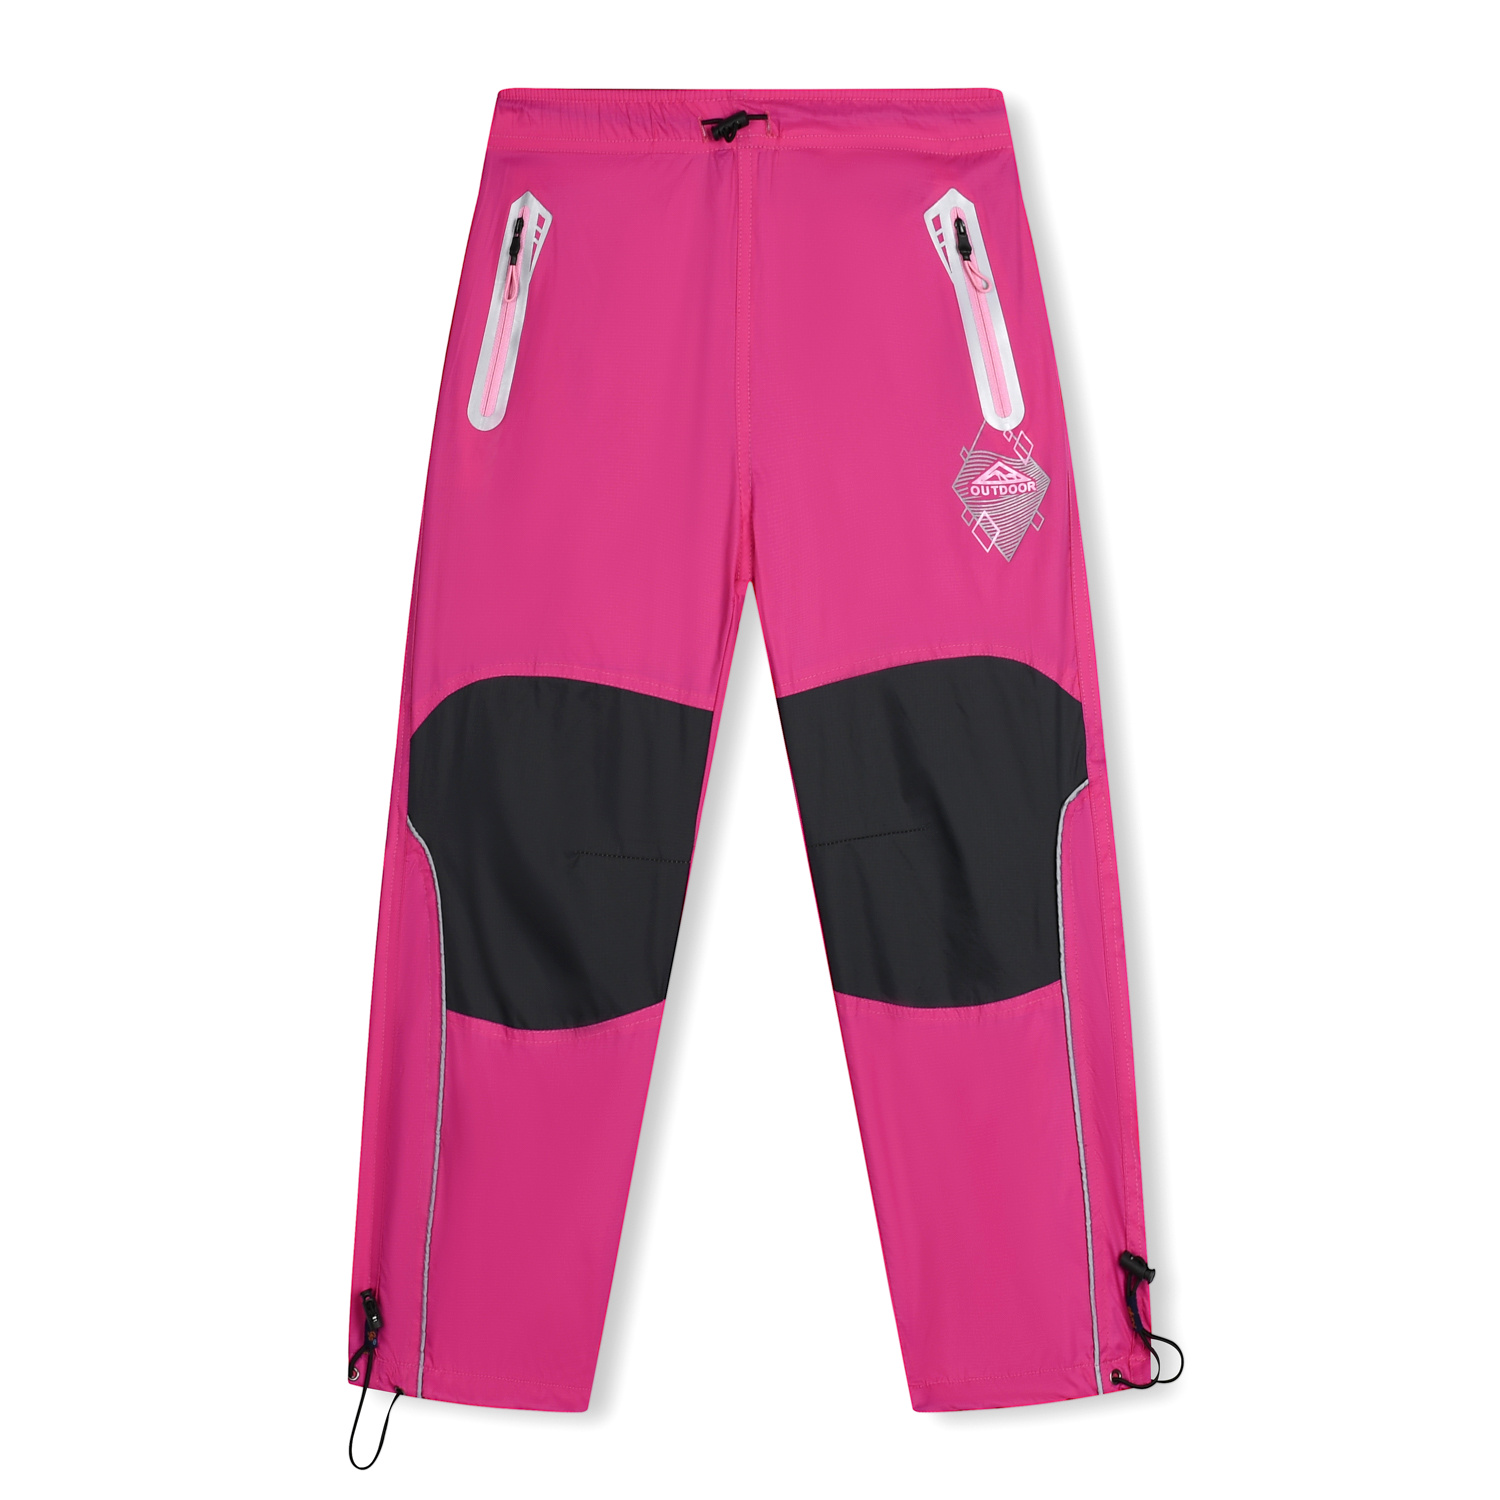 Dívčí šusťákové kalhoty - KUGO SK7739, růžová Barva: Růžová, Velikost: 146